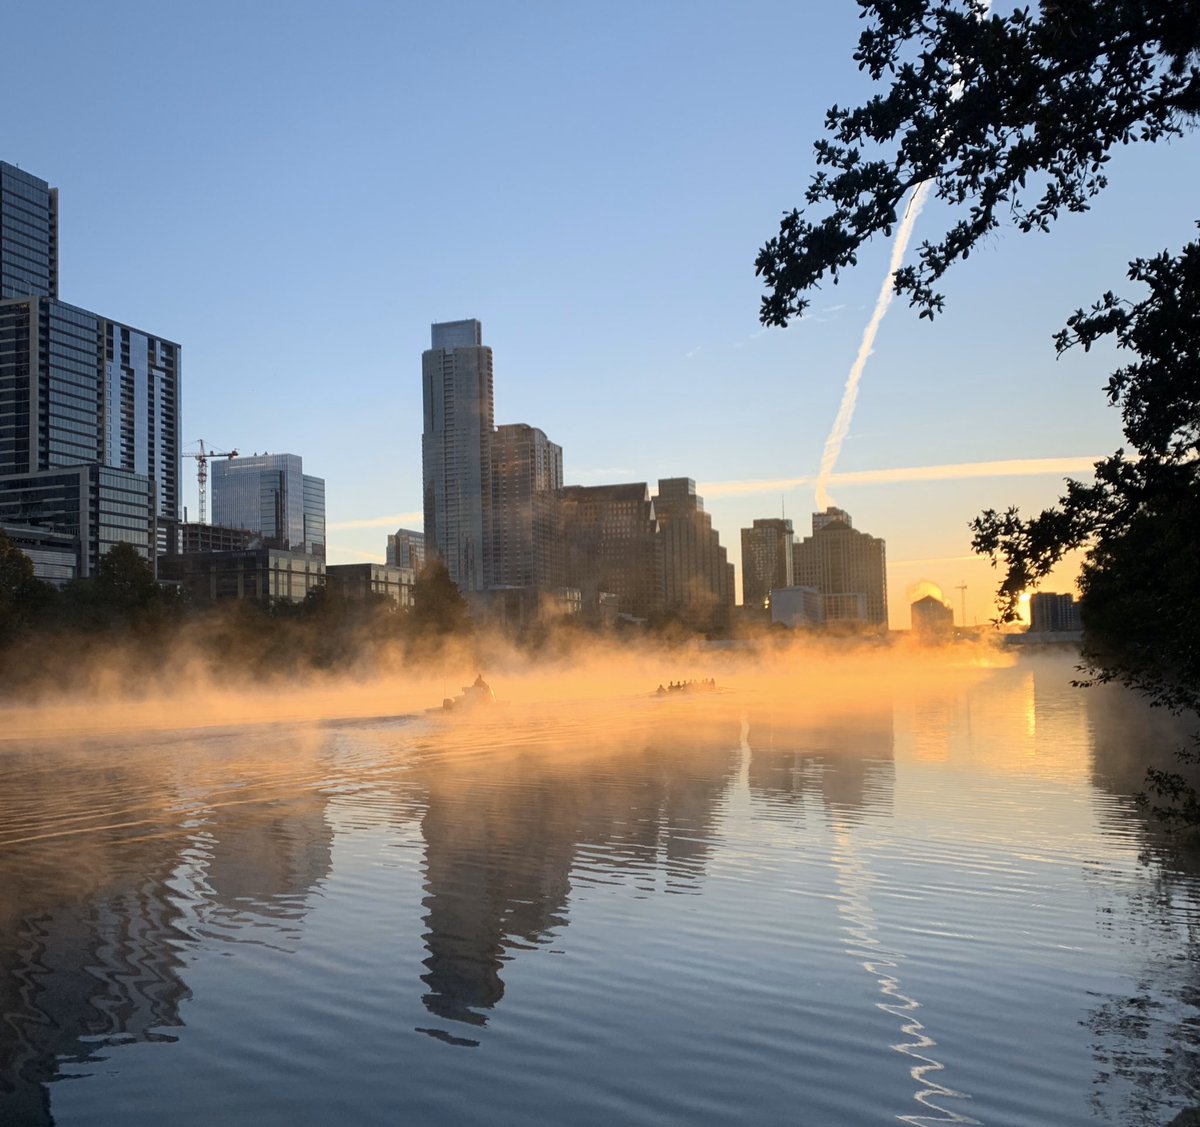 Good Morning, Austin!
#morningrun #morningfun